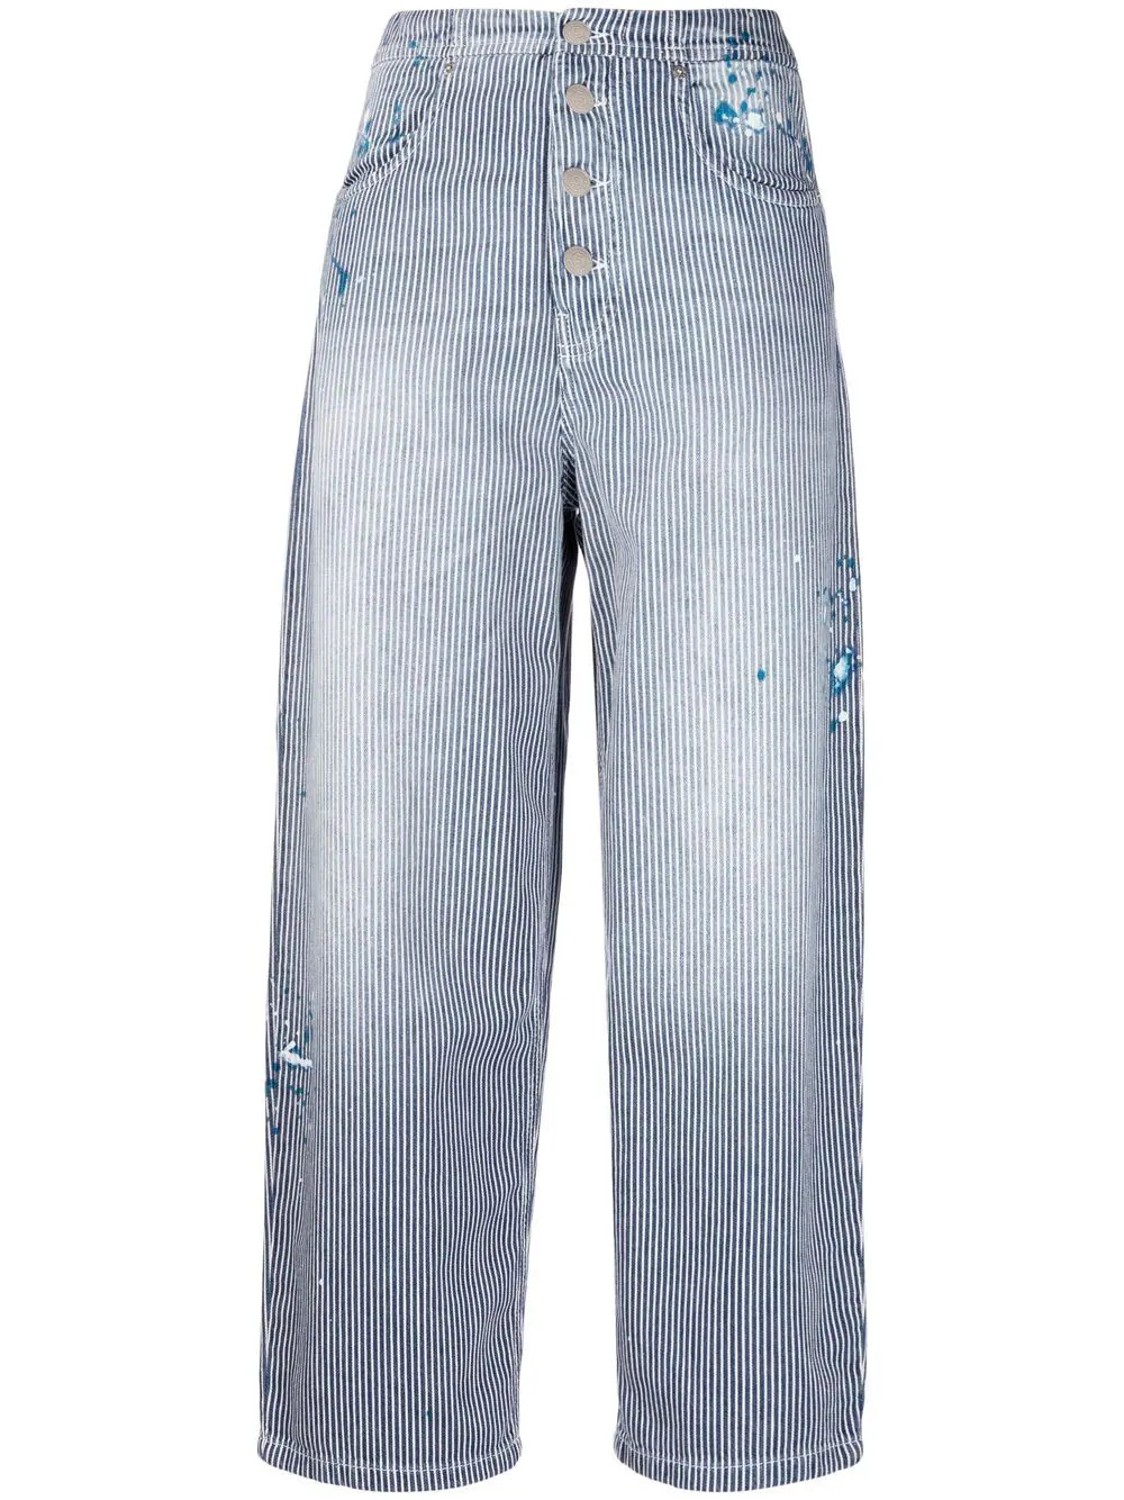 shop Department 5 Saldi Pantaloni: Pantaloni Department 5, jeans a righe, vita alta, chiusura davanti con bottoni, 4 tasche, più stretto infondo, lunghezza alla caviglia.

Composizione: 100% cotone. number 2179